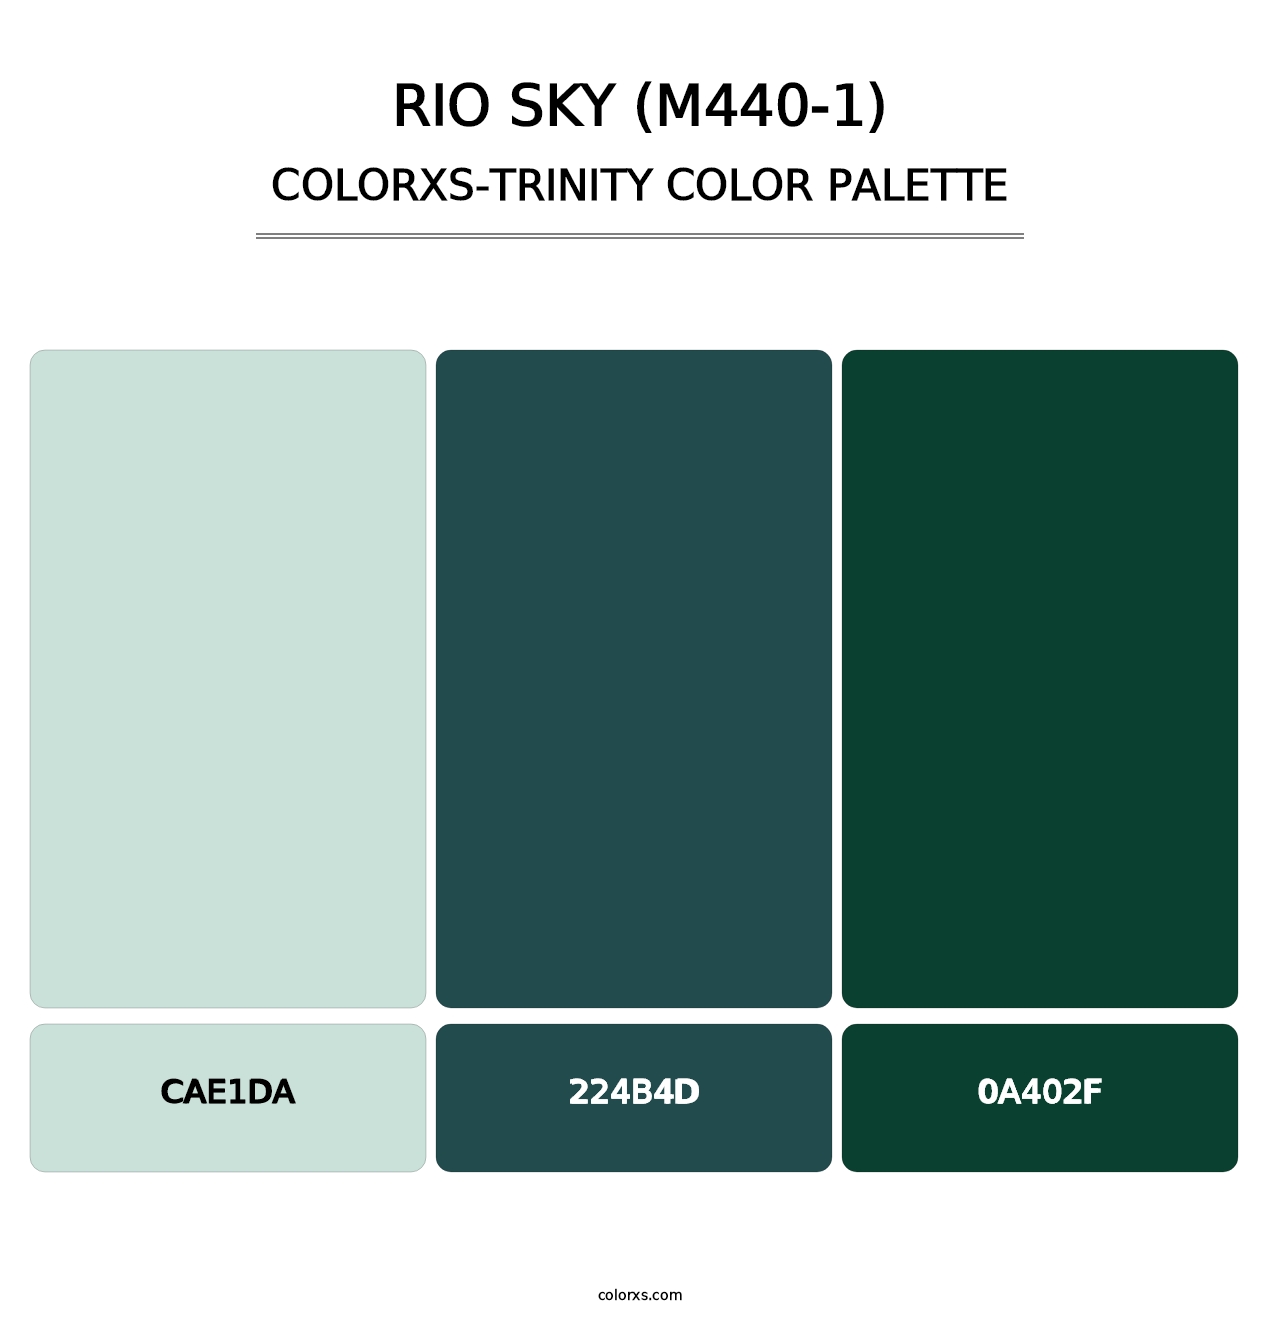 Rio Sky (M440-1) - Colorxs Trinity Palette